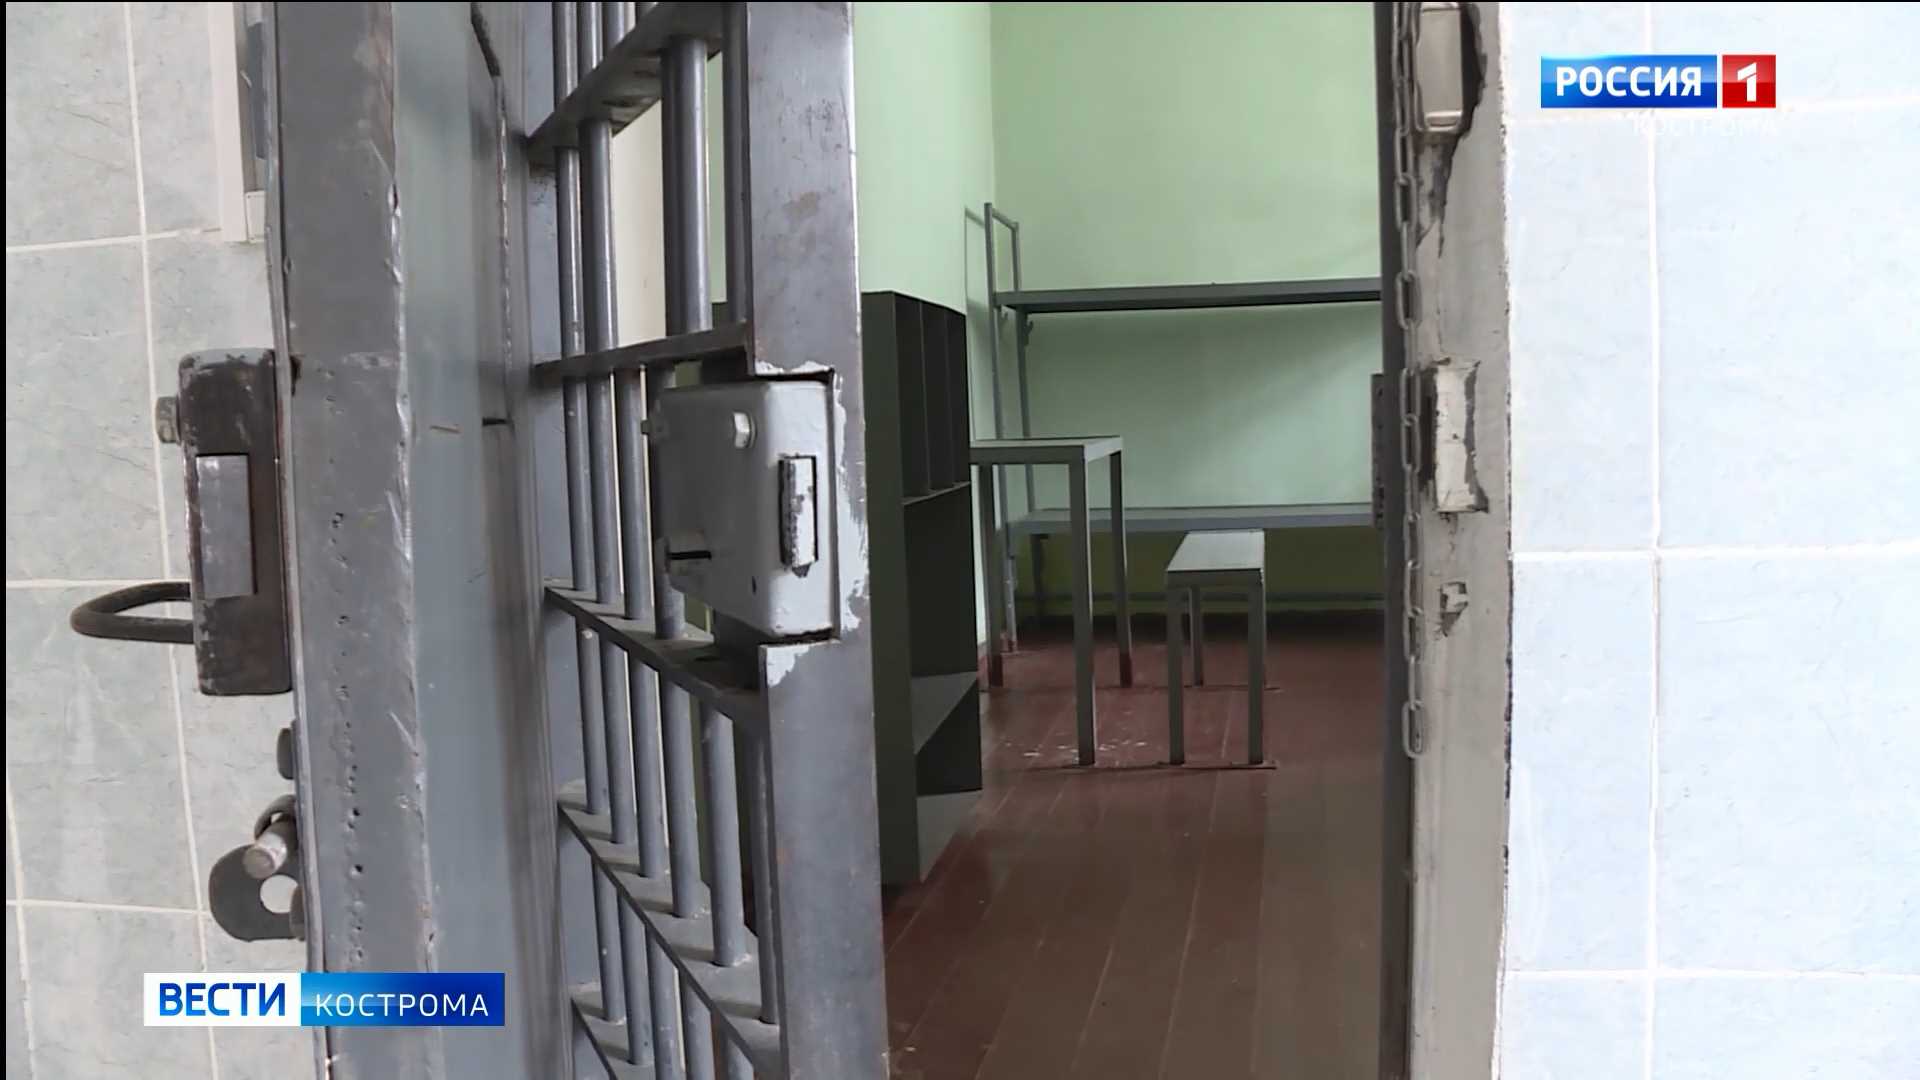 Главврача одной из районных больниц Костромской области подозревают в присвоениях и растратах